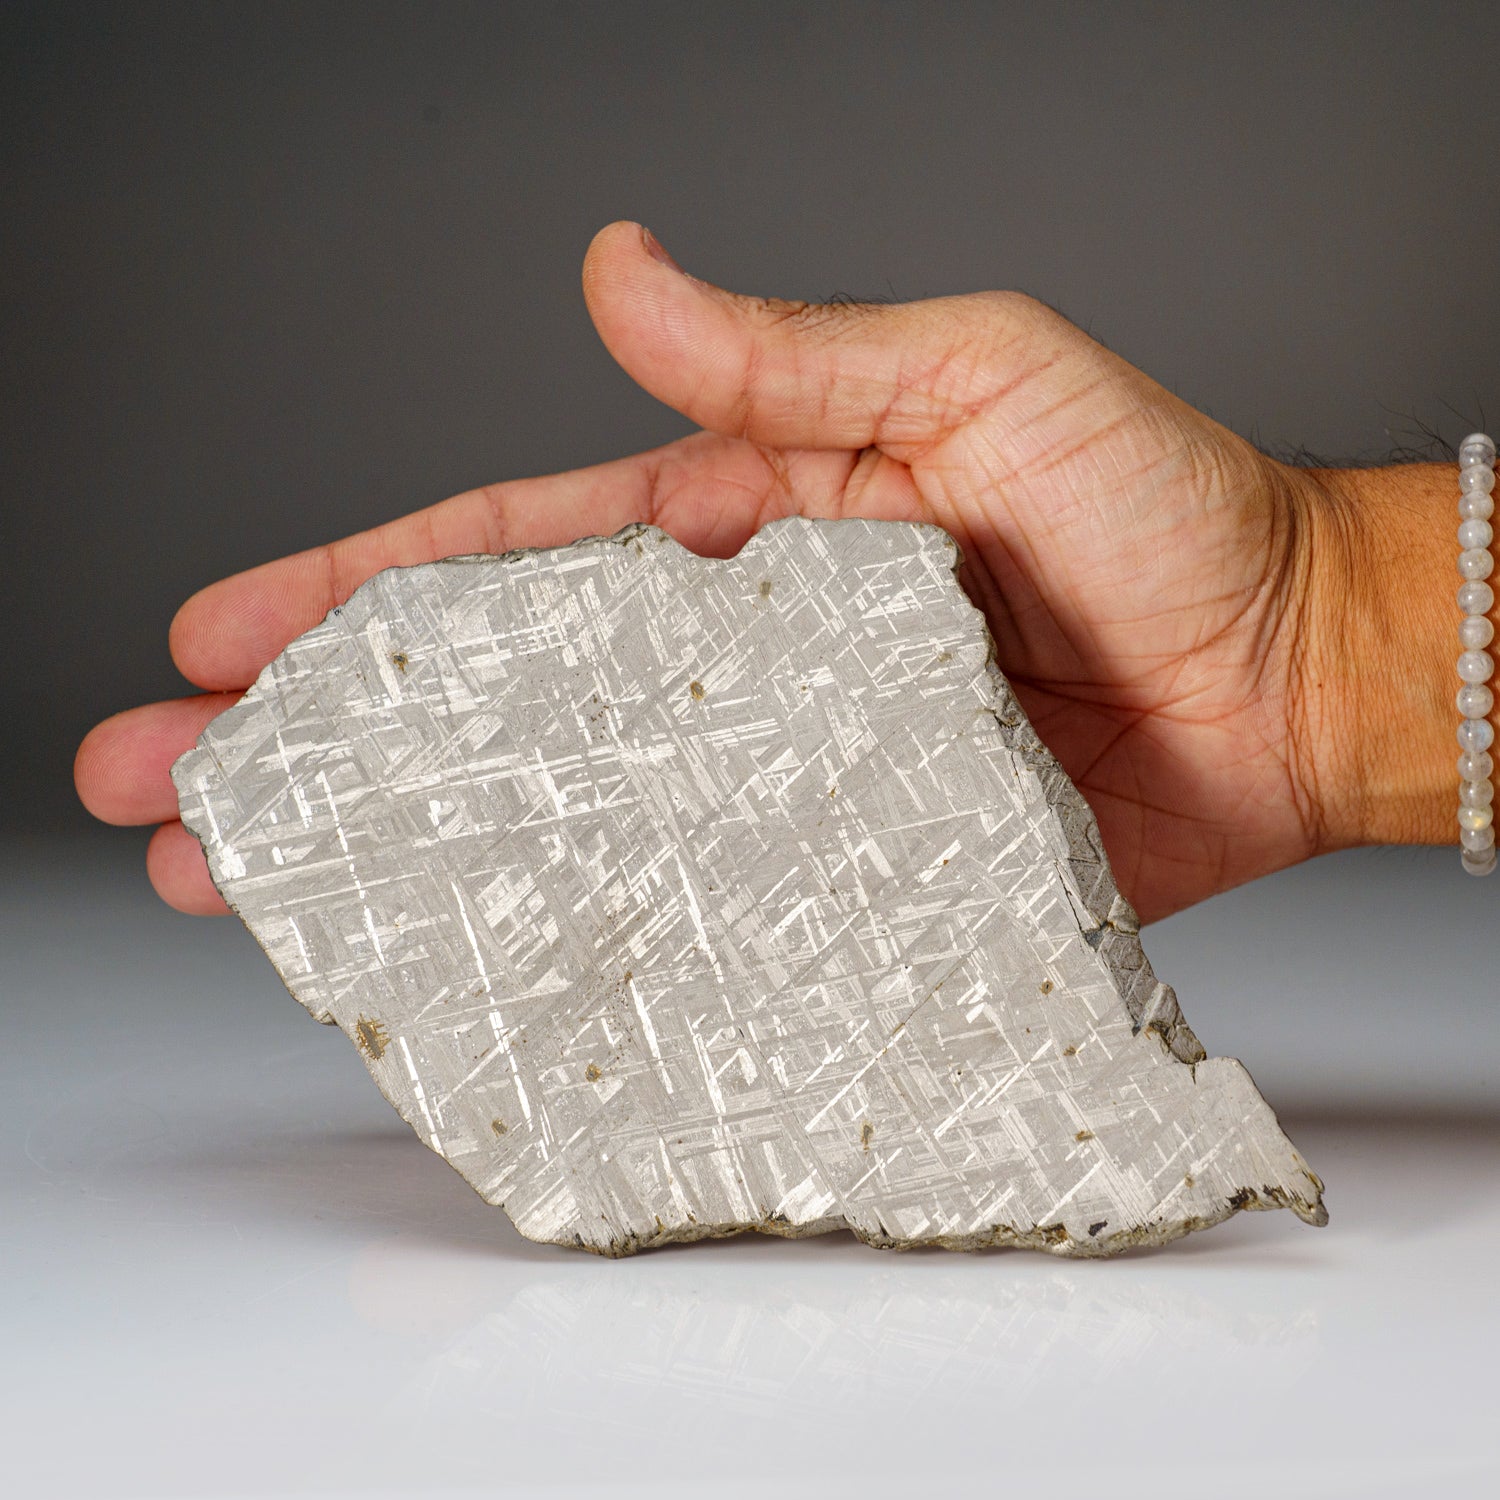 Genuine Muonionalusta Meteorite Slice (332 grams)